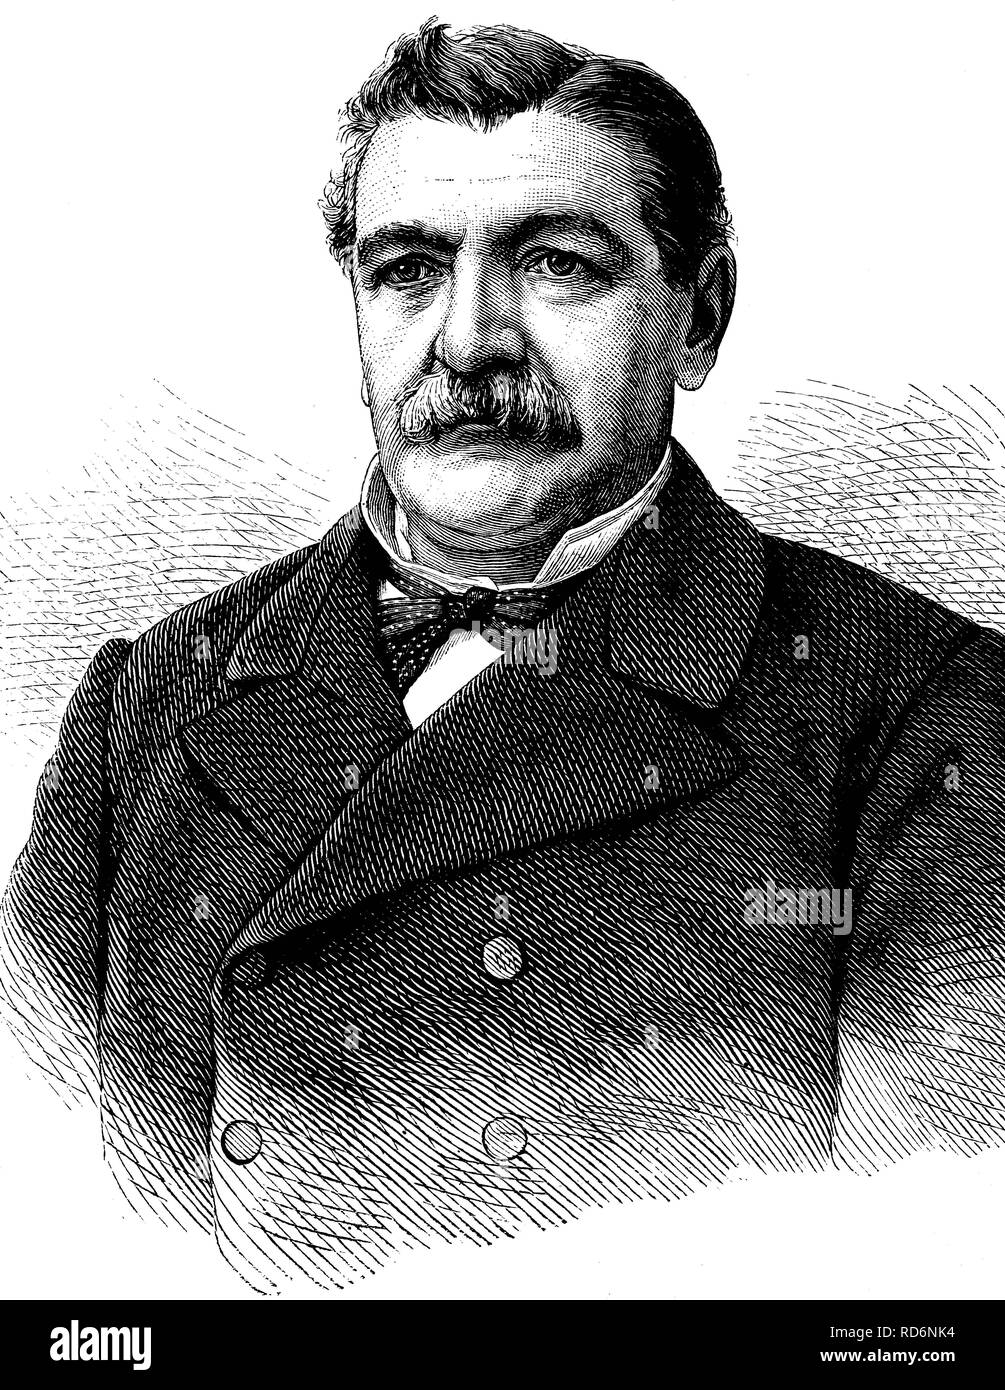 Domingo Santa Maria Gonzalez, 1824-1889, président du Chili, de l'illustration historique, vers 1886 Banque D'Images